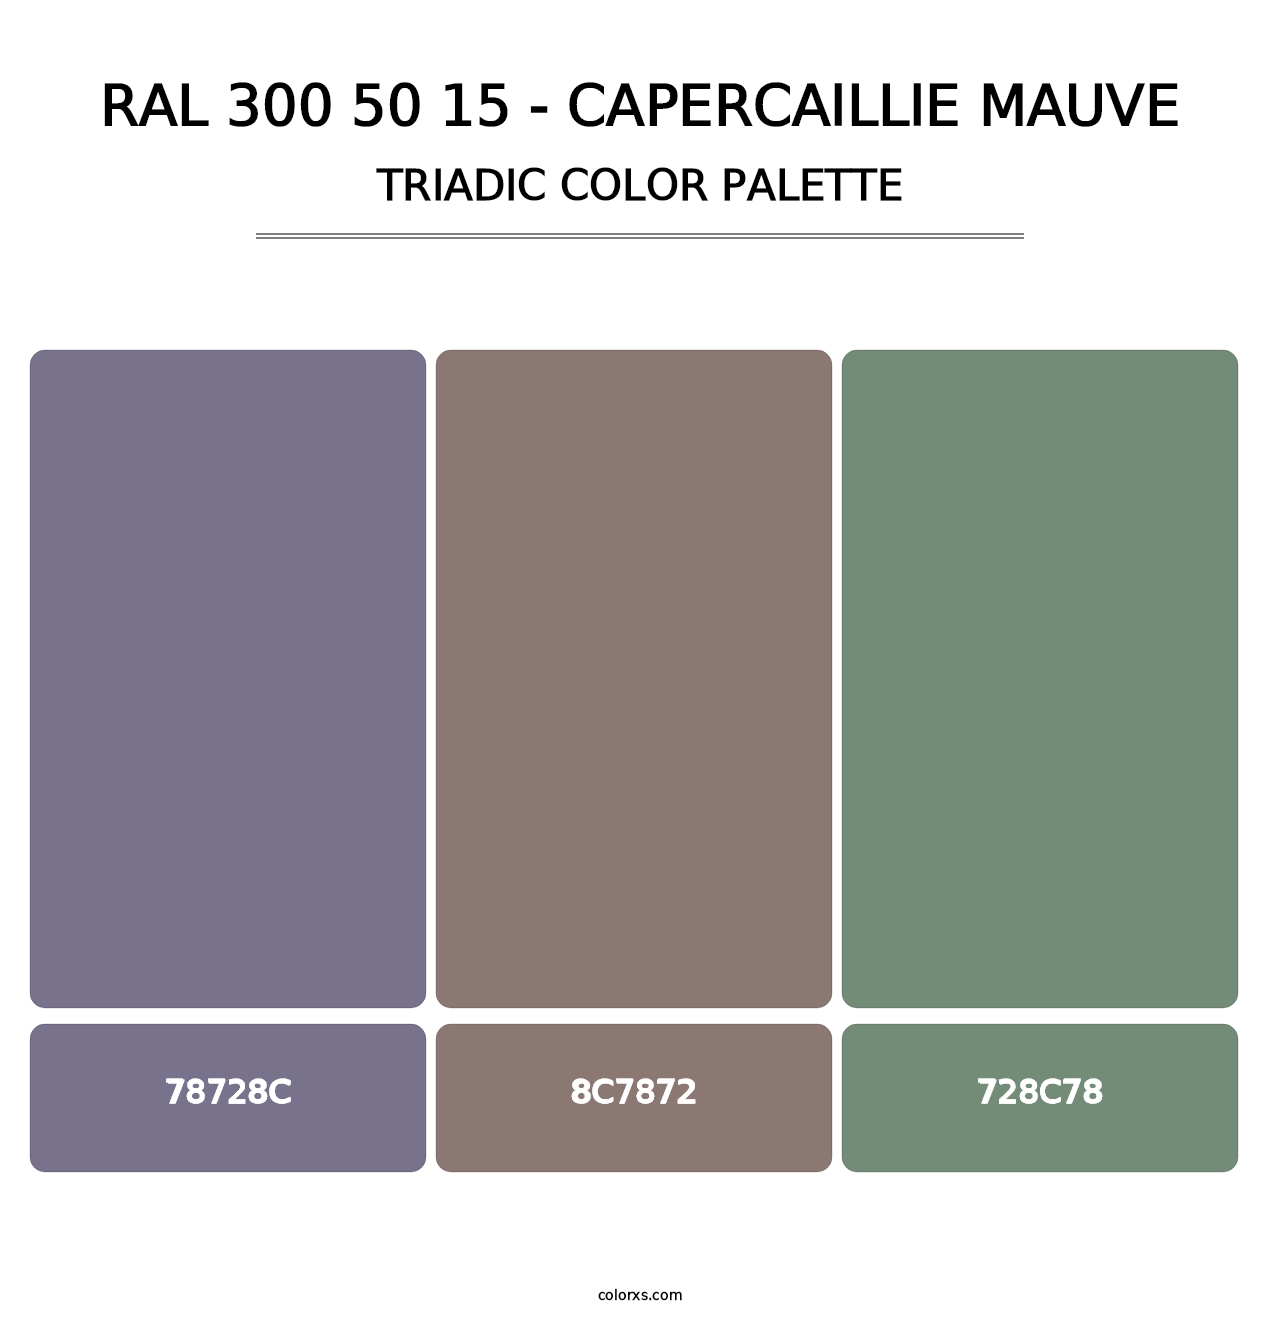 RAL 300 50 15 - Capercaillie Mauve - Triadic Color Palette